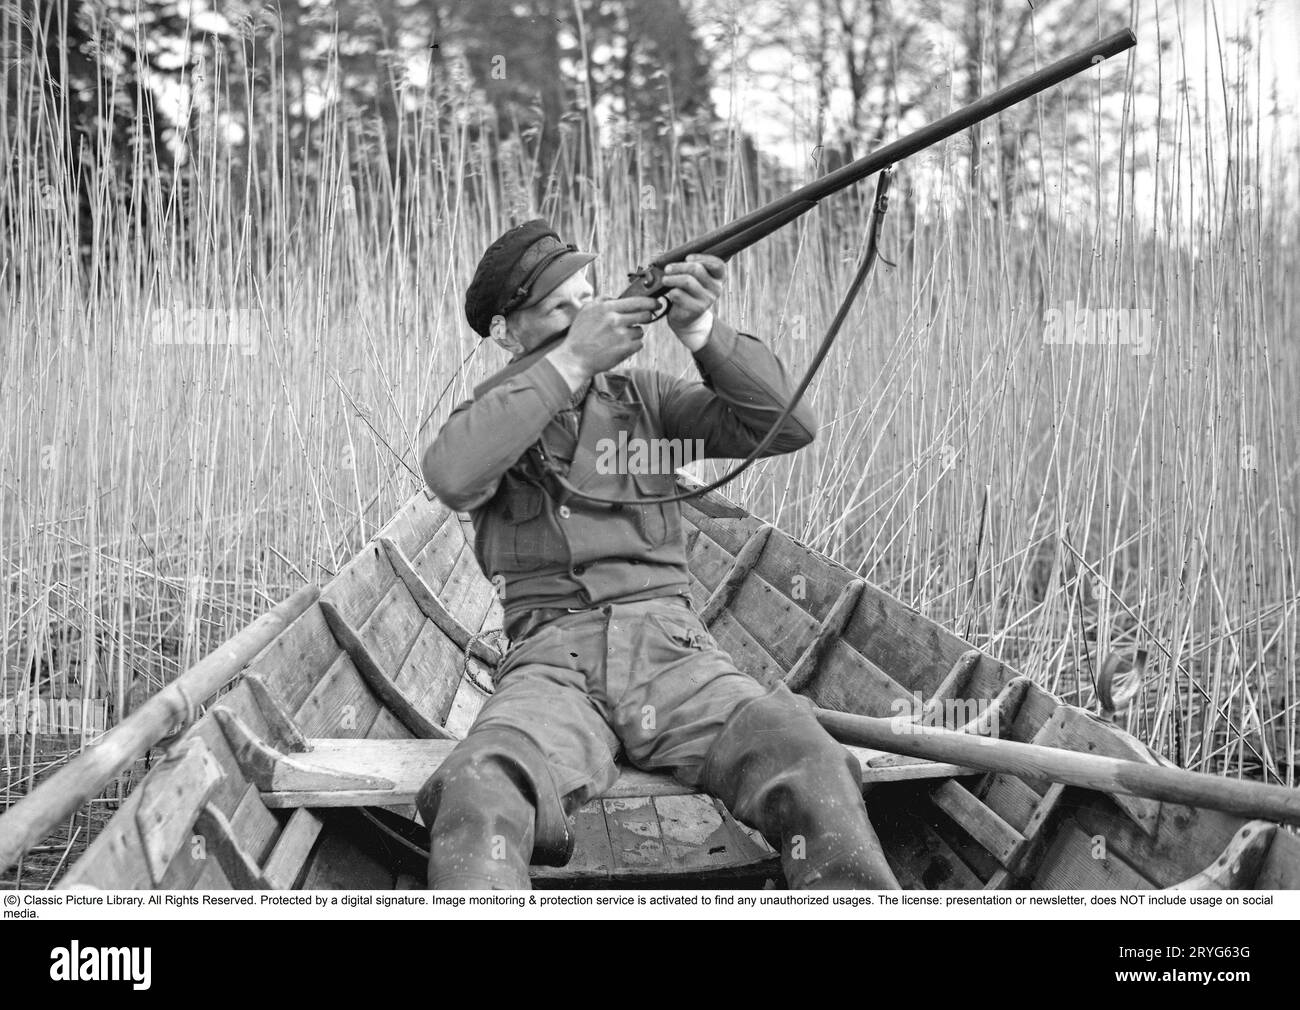 Dans les années 1930 Un homme est assis dans un bateau à rames et vise son fusil vers le haut pour tirer des canards. Suède 1939. Kristoffersson ref 155-11 Banque D'Images